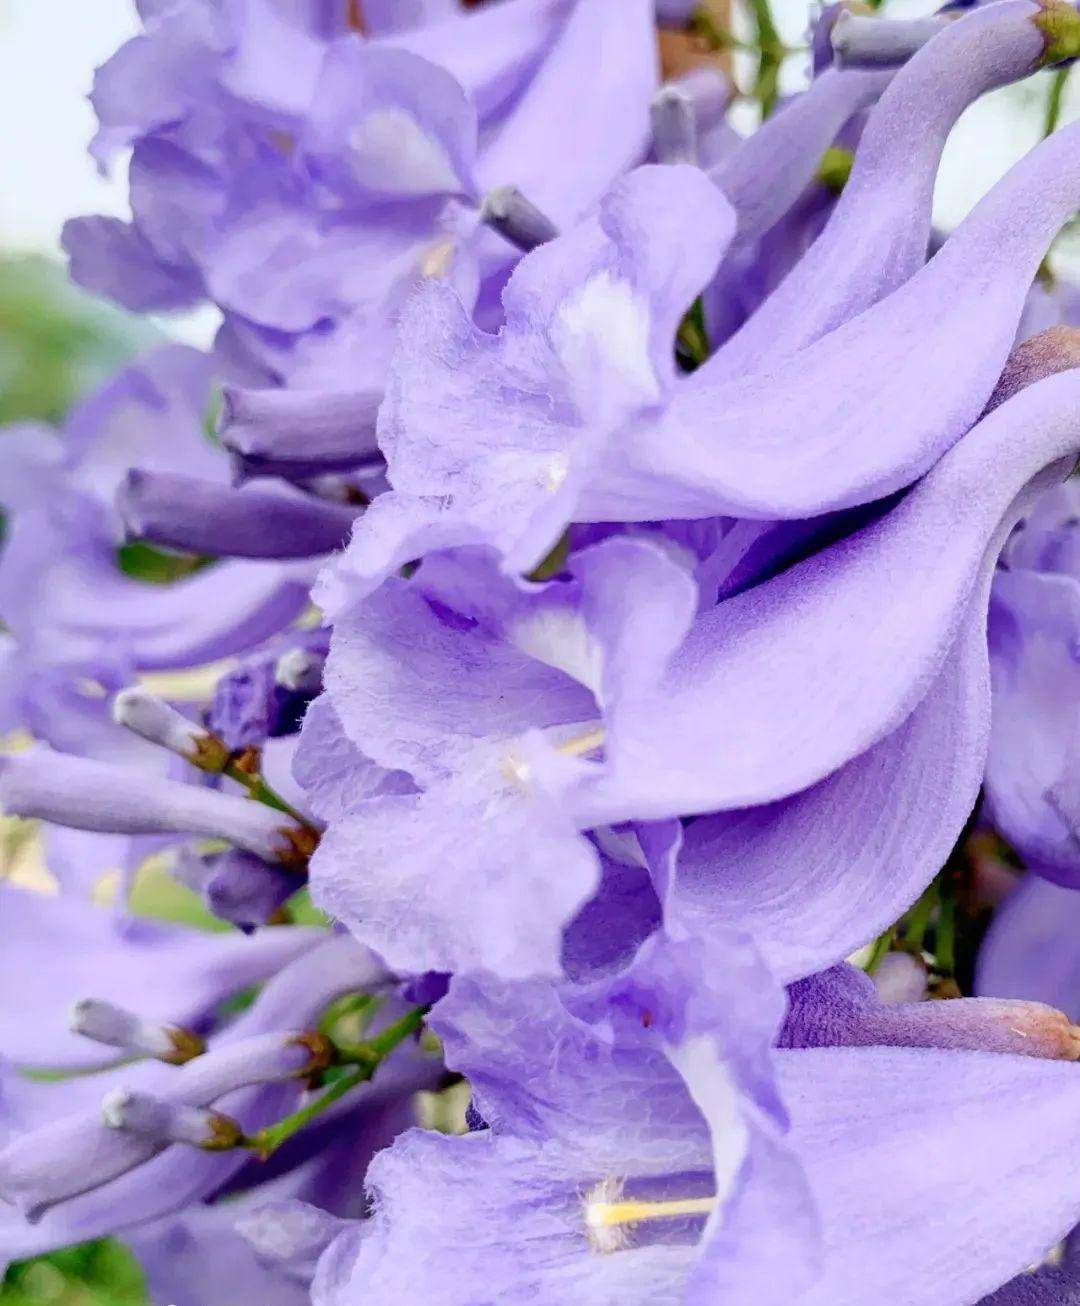 蓝楹花盛开!紫色一片,太迷人了!具体赏花地址在.